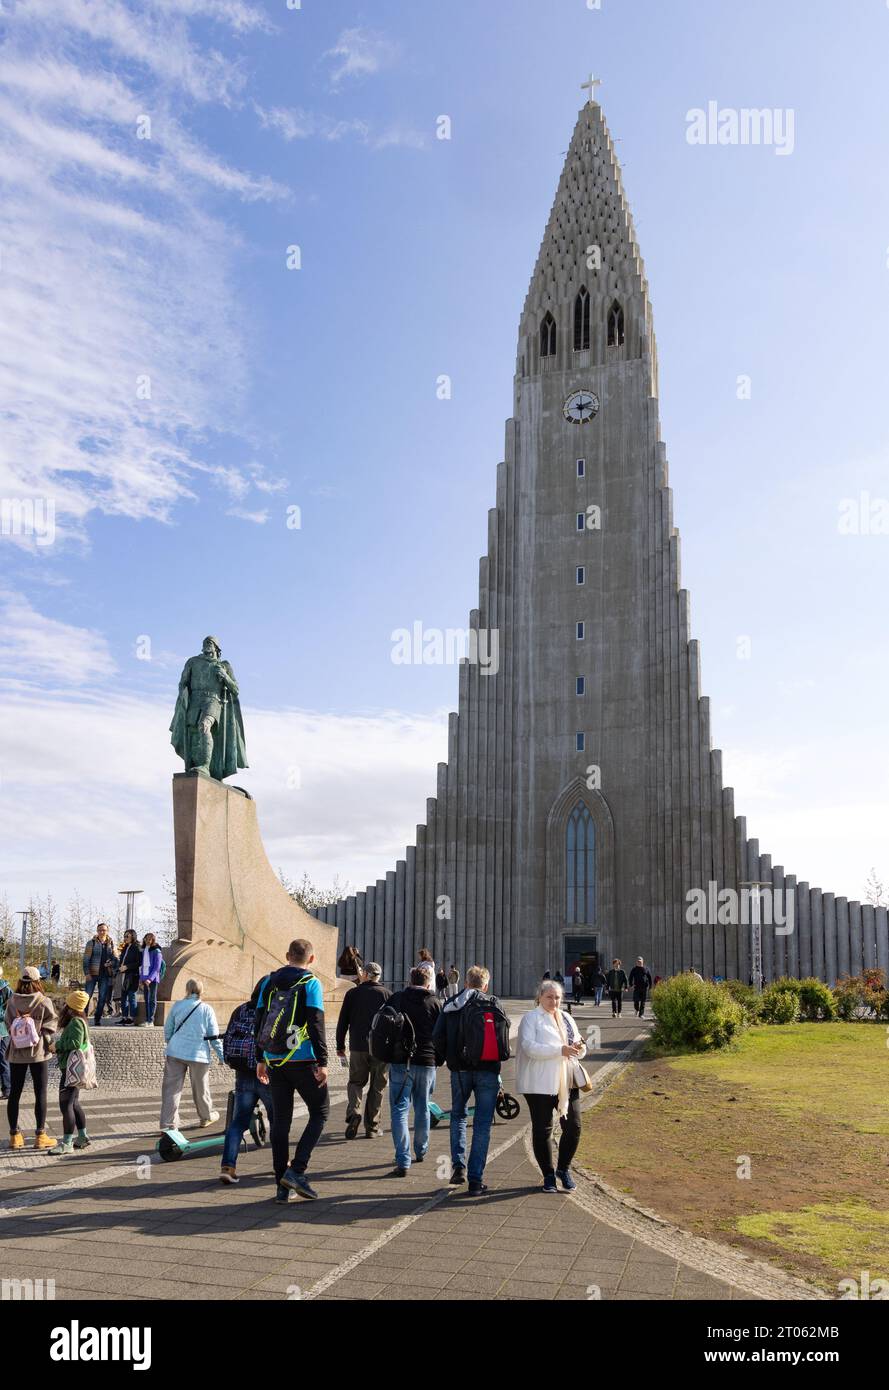 Island Touristen in der Kathedrale von Reykjavik oder Hallgrímskirkja, und die Statue von Leif Erikson, Sommer, Reykjavik Island Europe Stockfoto